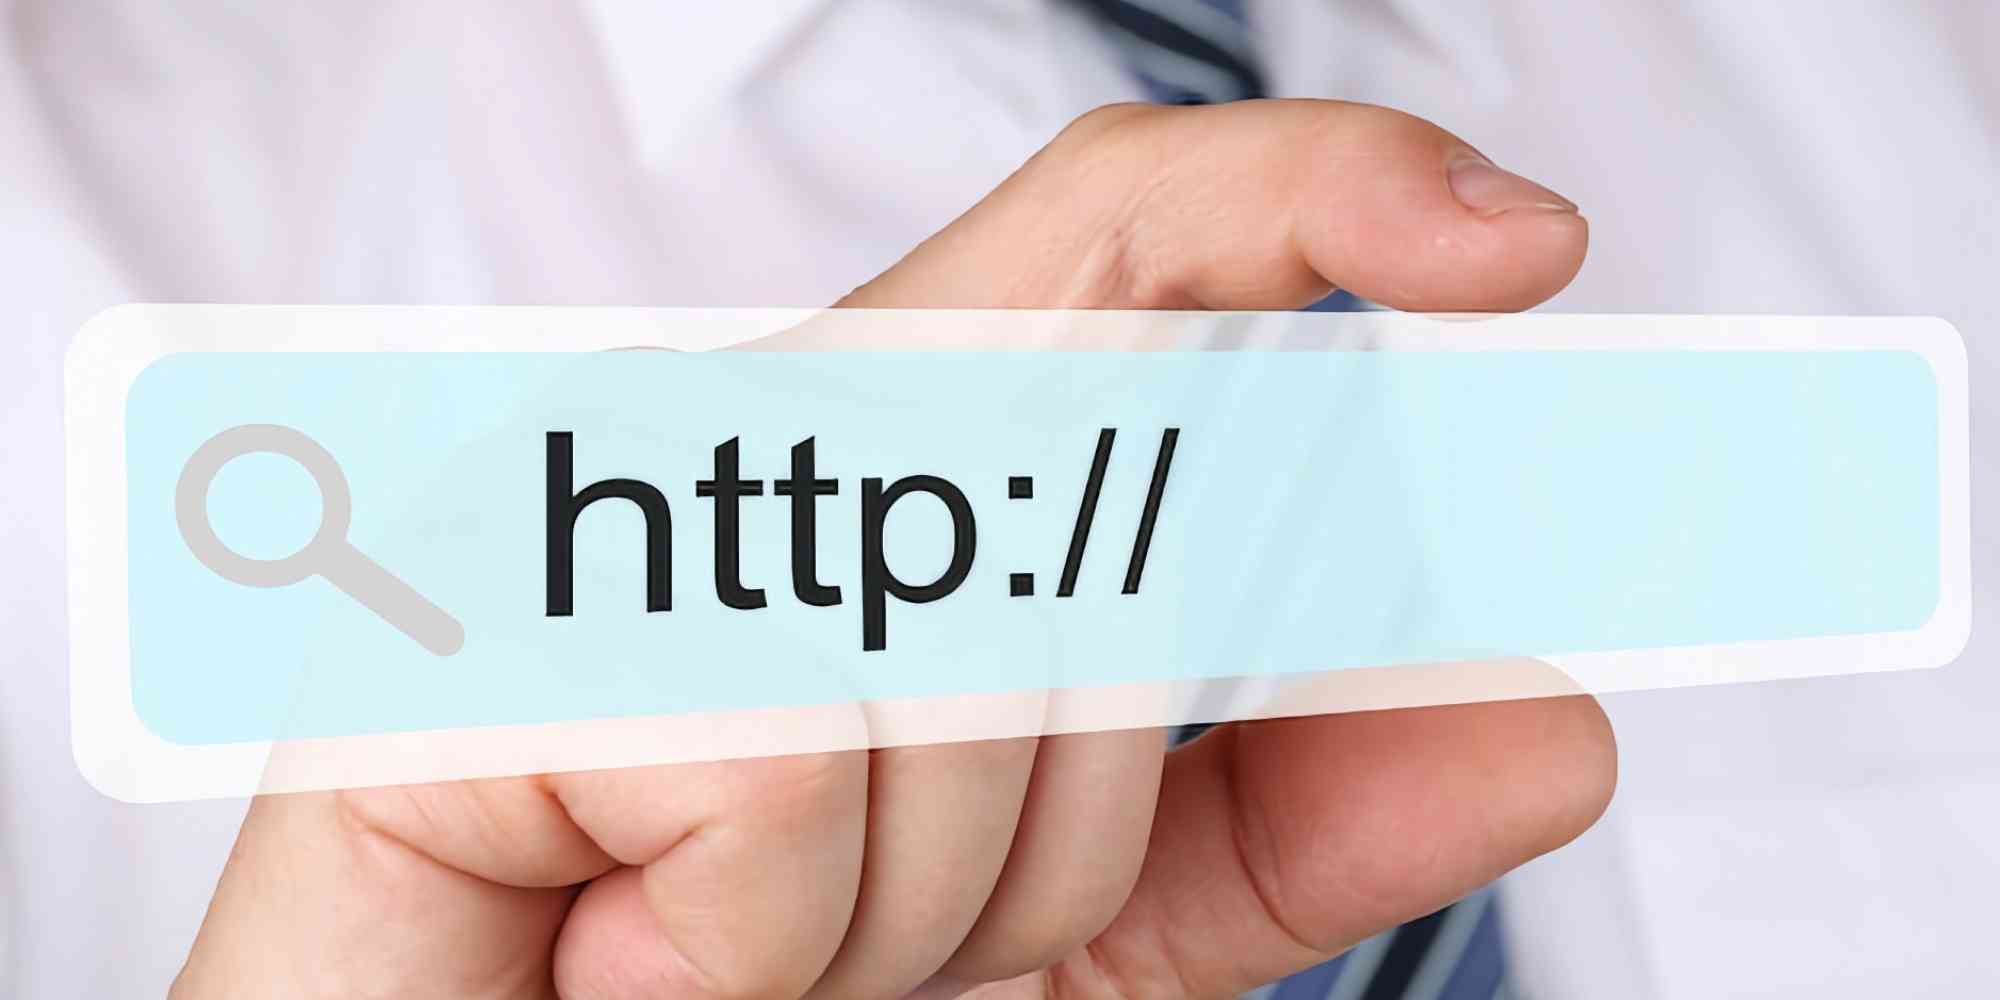 一个人的手拿着一张透明卡片或虚拟屏幕，开头是 URL "http://"，这是网络中传输超文本请求的标准协议。这类图像通常用来表示数字世界、互联网连接和网址。就搜索引擎优化（SEO）而言，网页 URL 的结构和标准化会对其搜索引擎排名和用户访问性产生重大影响。一致、清晰、描述性强的 URL 会受到搜索引擎的青睐，并能提升用户体验，使其更容易被点击和分享。